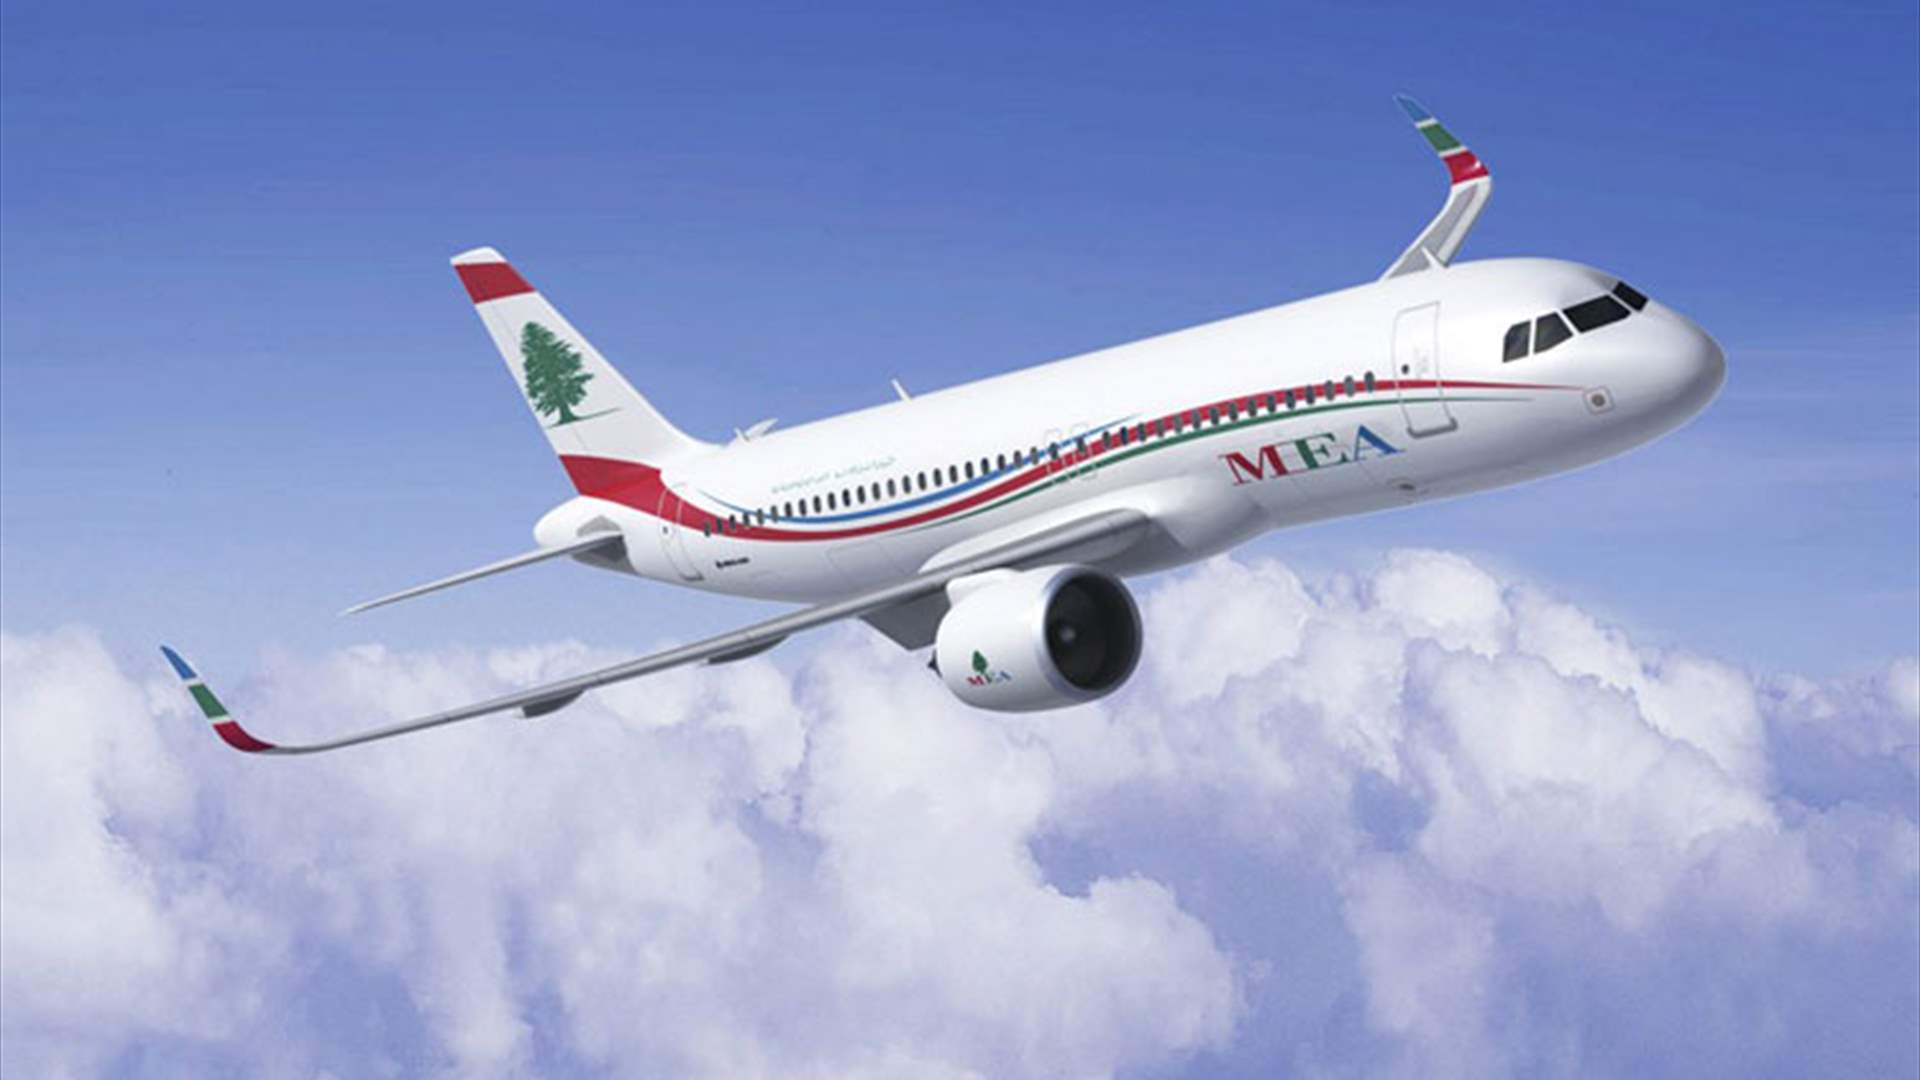 طيران الشرق الأوسط: رحلتا الدوحة وأبو ظبي تسيران وفق التوقيت المحدد اليوم